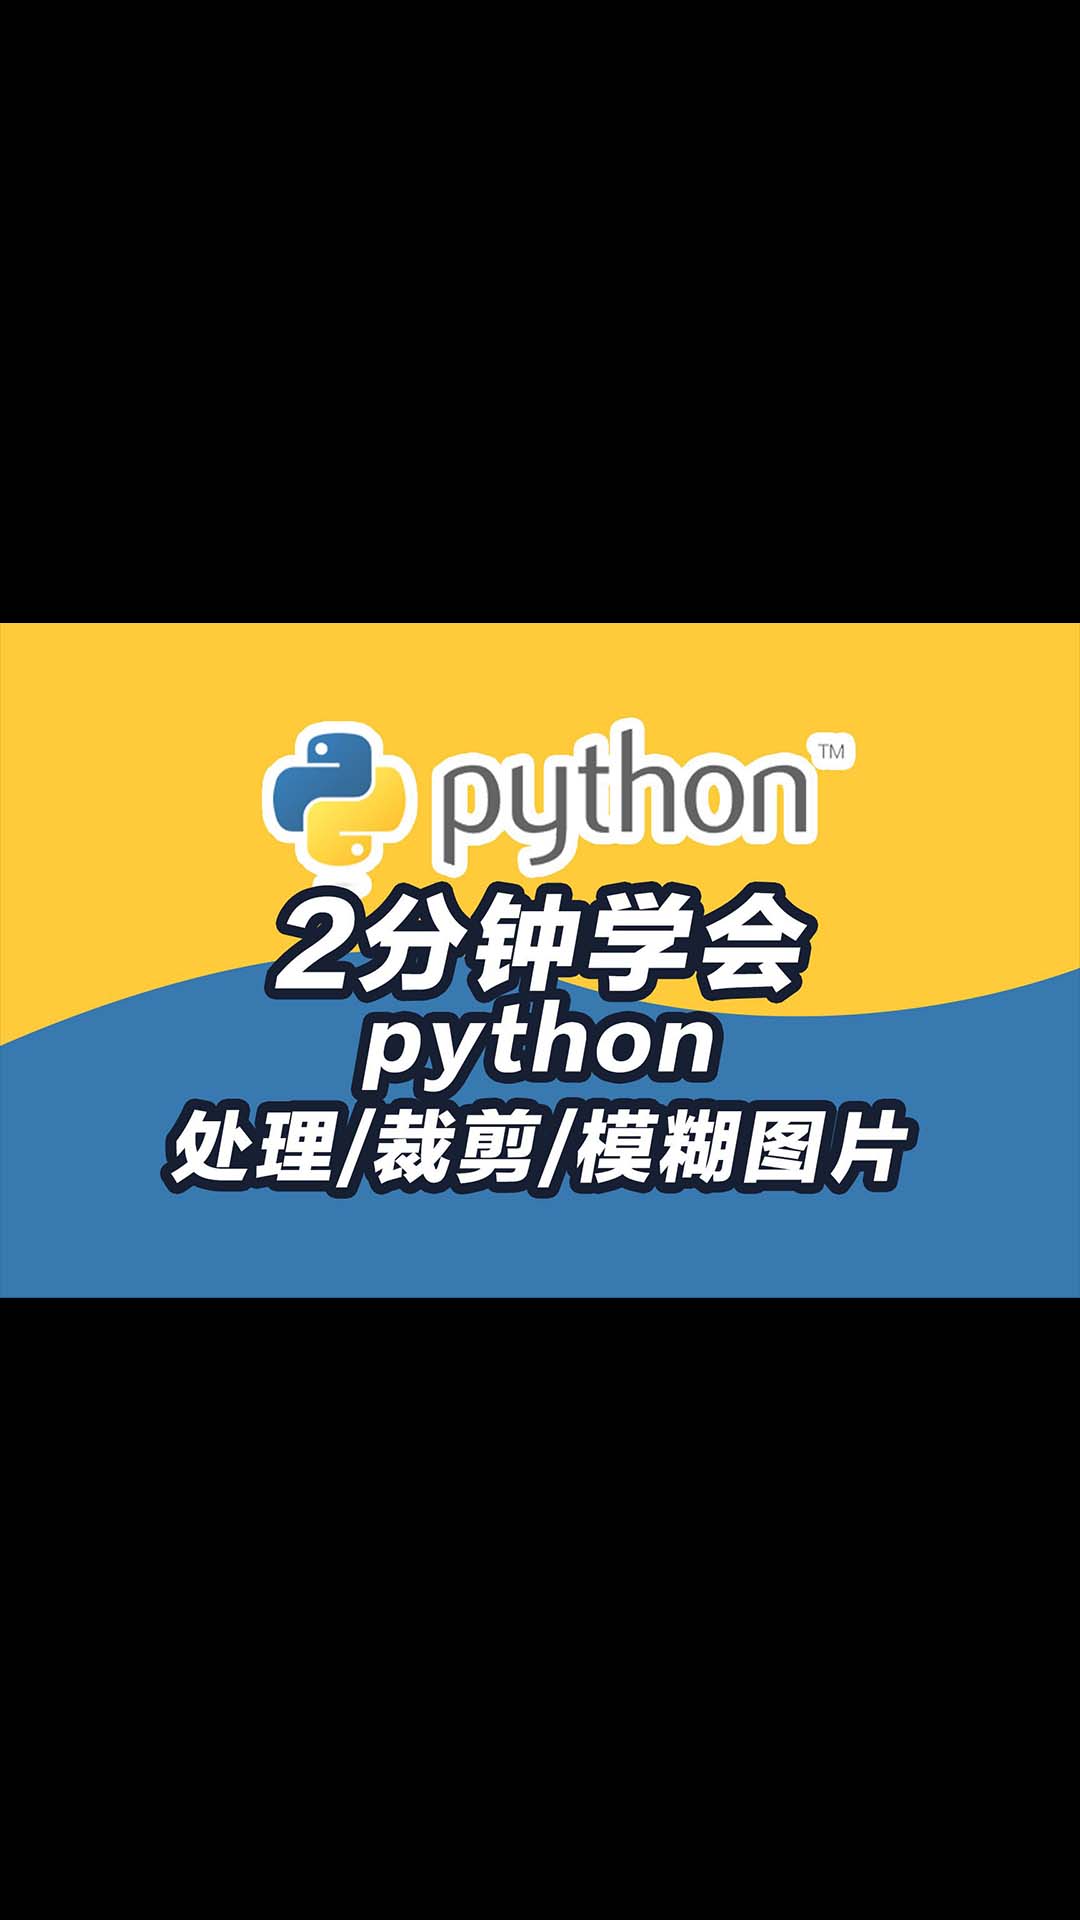 2分钟系列python pillow处理图片、裁剪模糊合成图片 python教程.